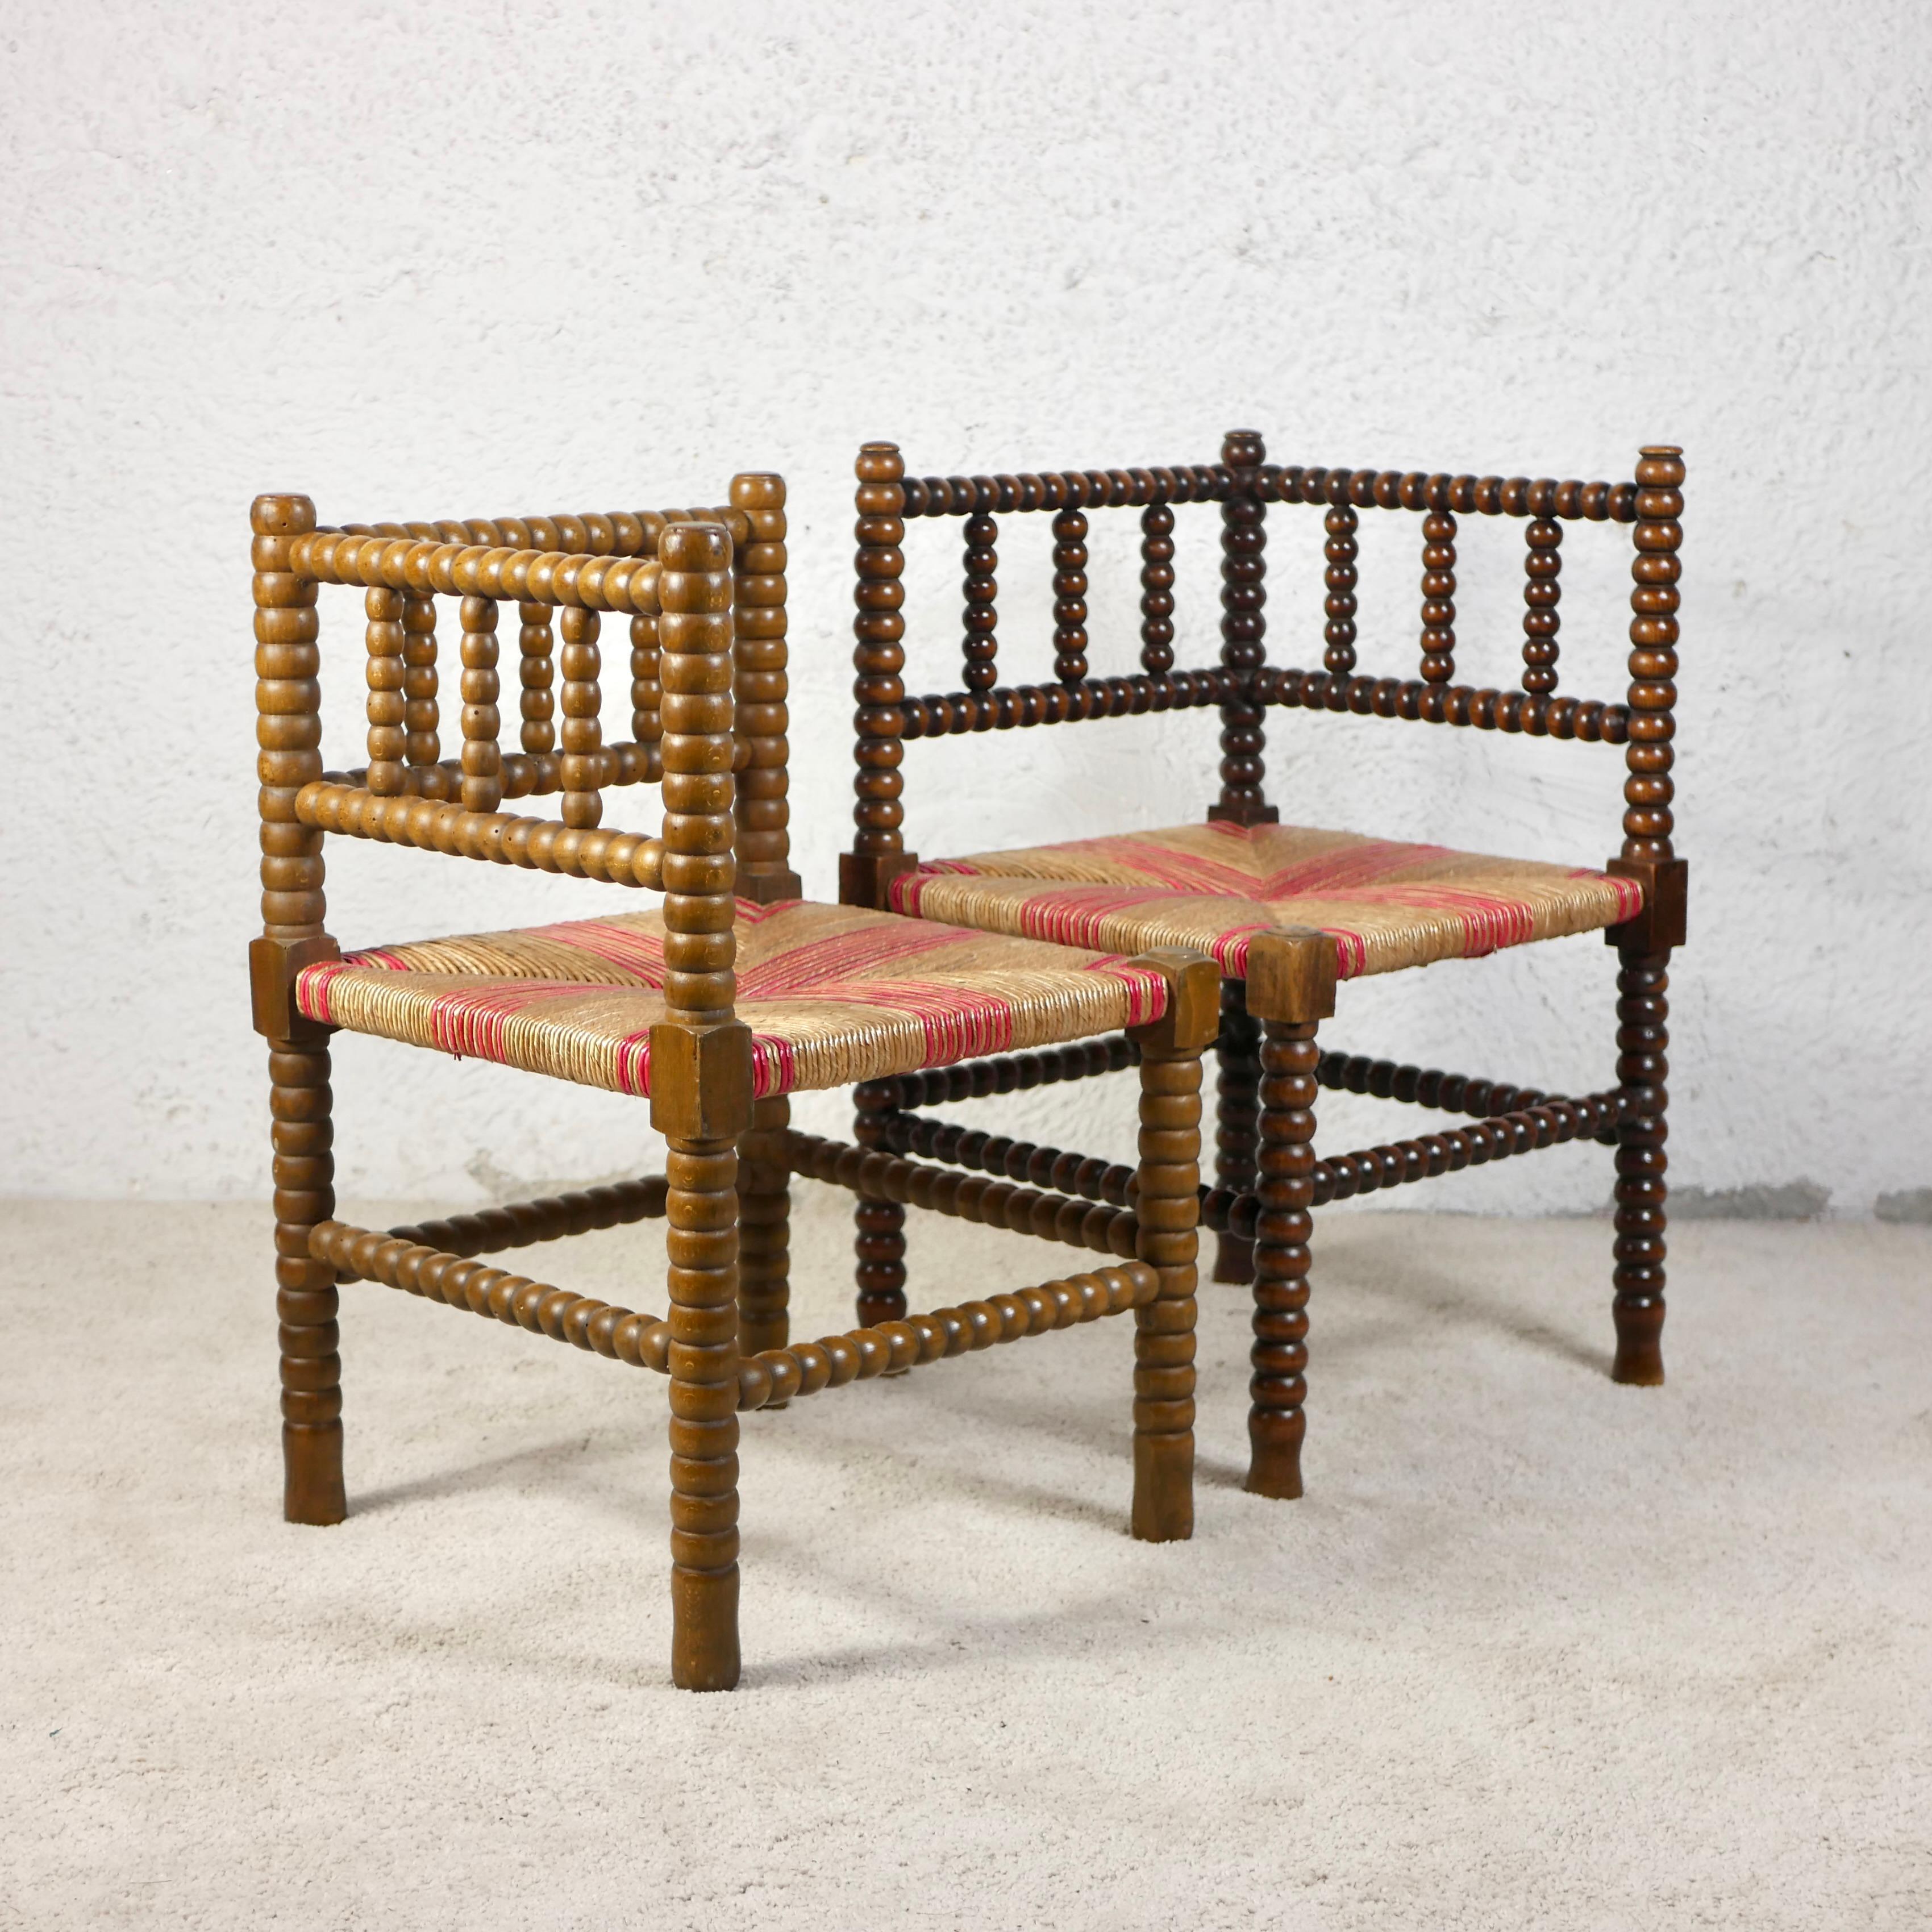 Belle paire de deux chaises d'angle, également appelées chaises Bobbin, fabriquées en France entre la seconde moitié du XIXe siècle et le début du XXe siècle. 
Ils constituaient des meubles courants, surtout à la campagne, et étaient utilisés comme